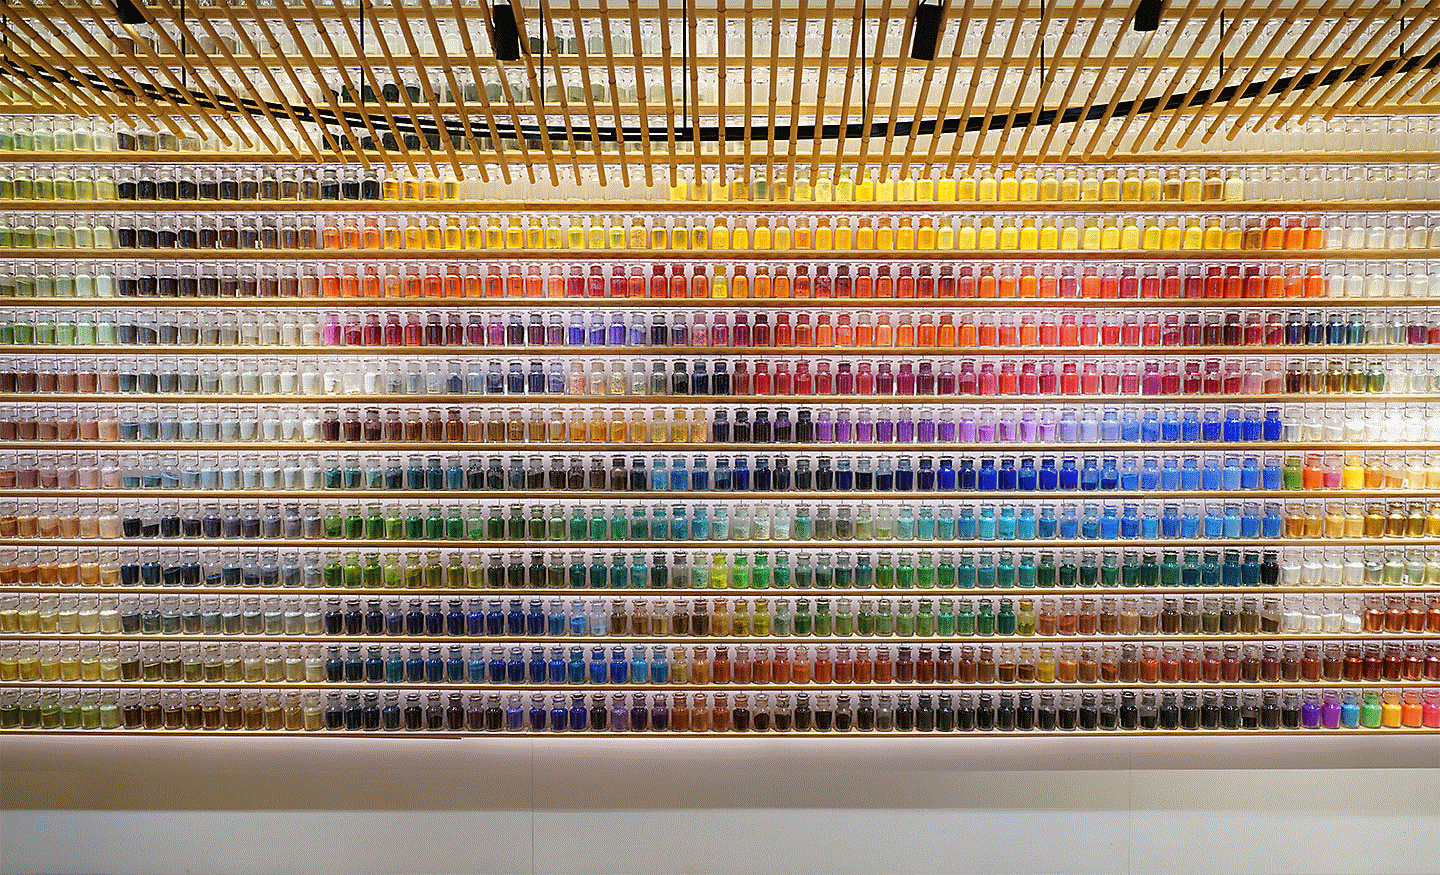 Contoh gambar sebuah dinding penuh botol warna-warni